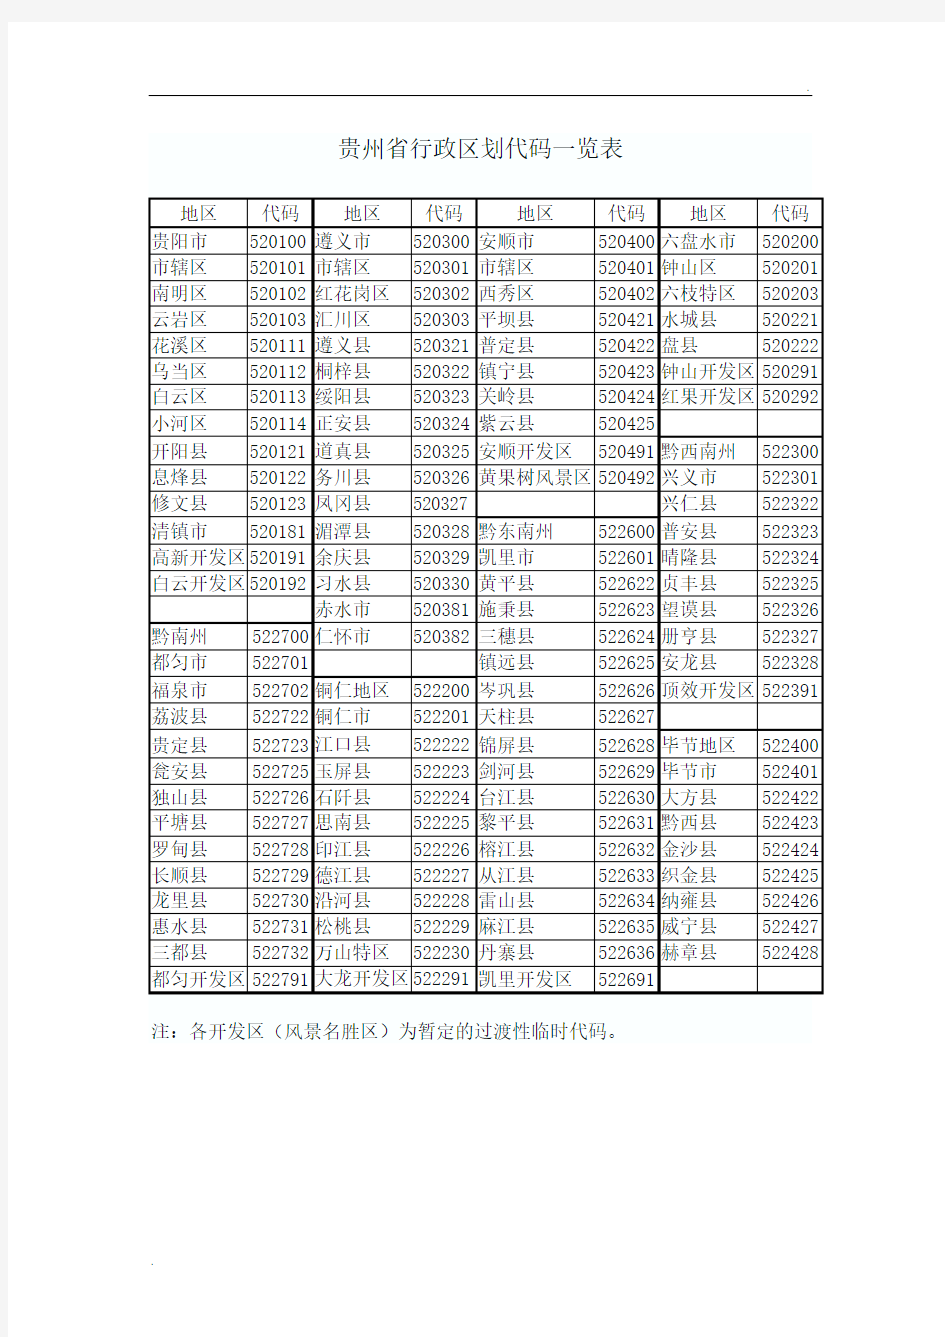 贵州省行政区划代码一览表 (2)